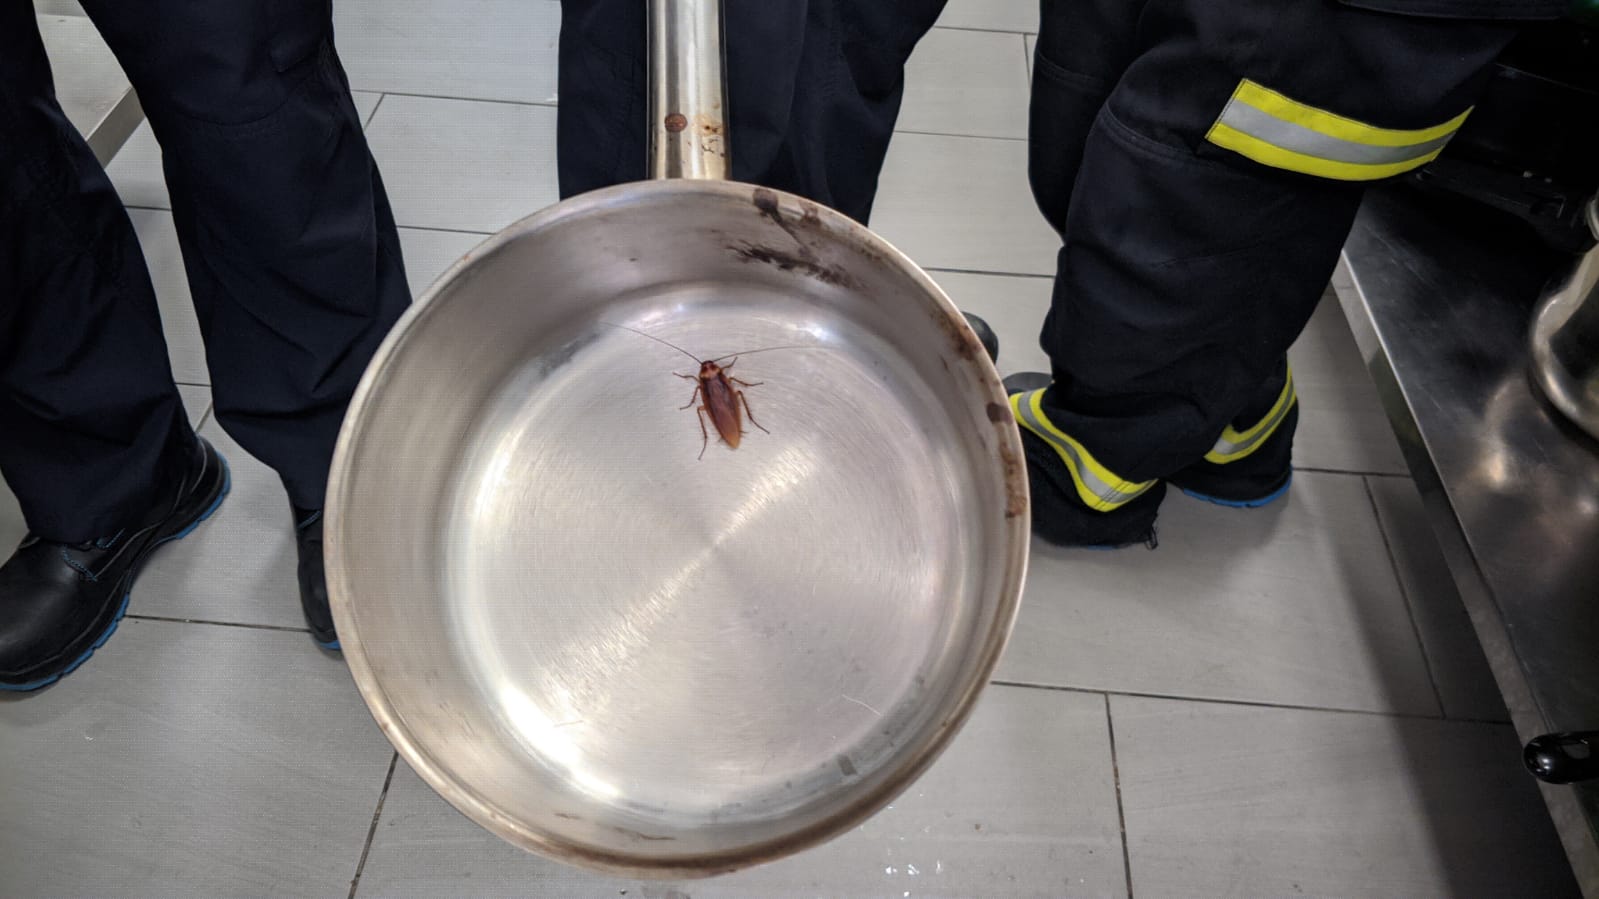 Una cucaracha encontrada en una sartén.